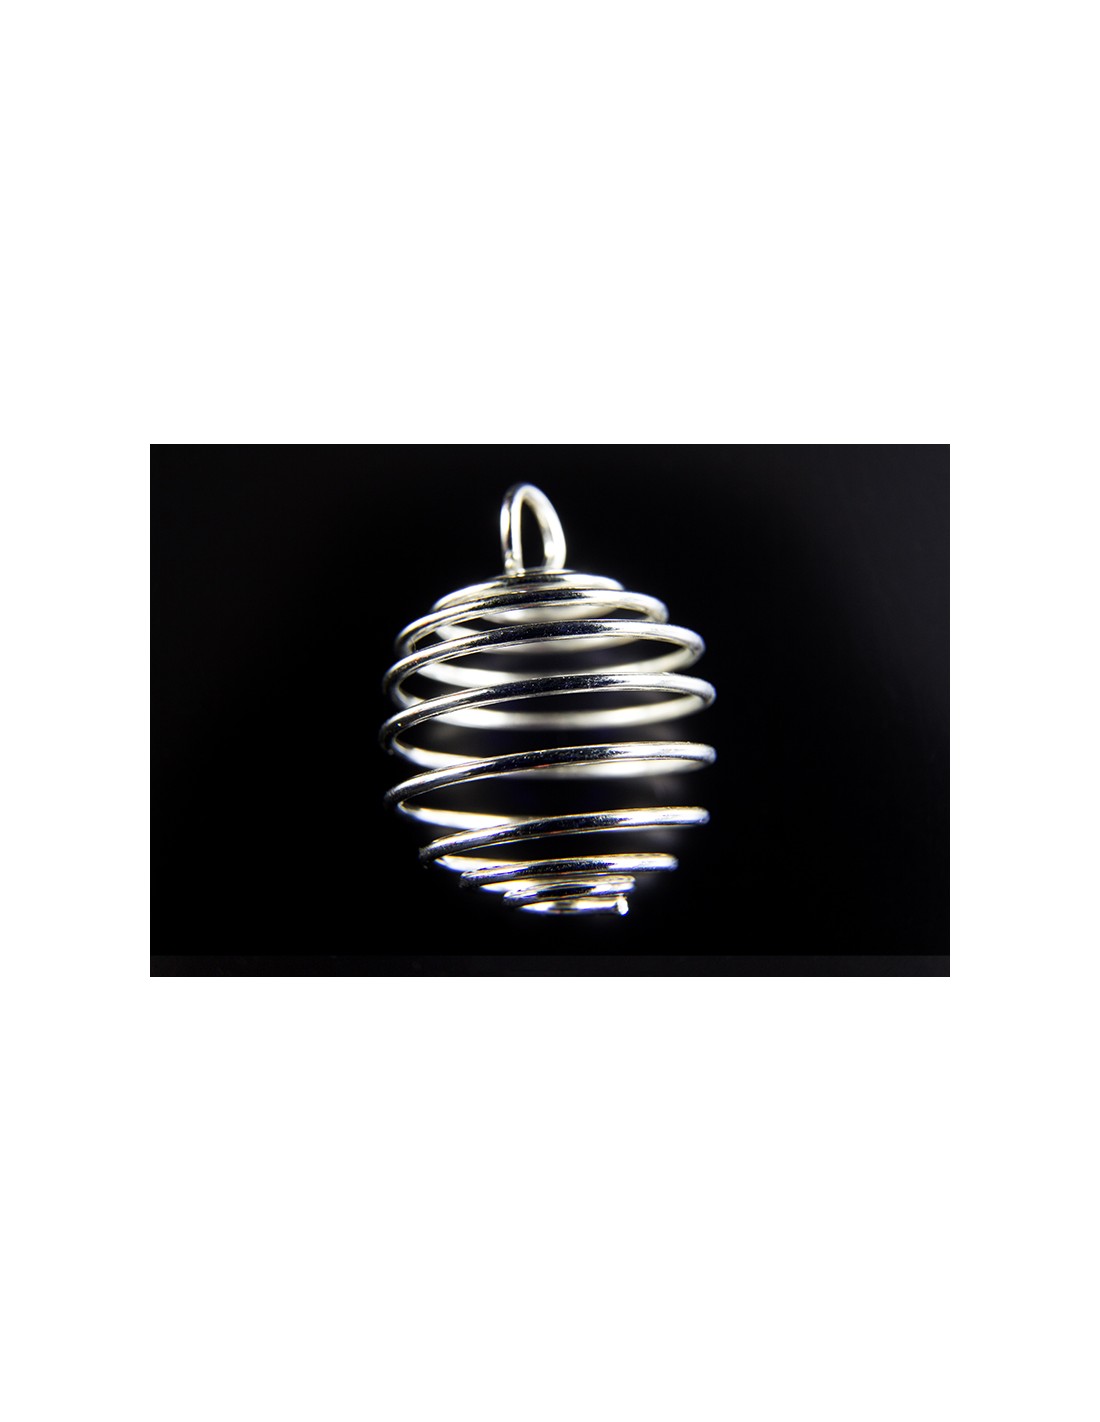 Meatl spiral for pendant – Minervashop.eu